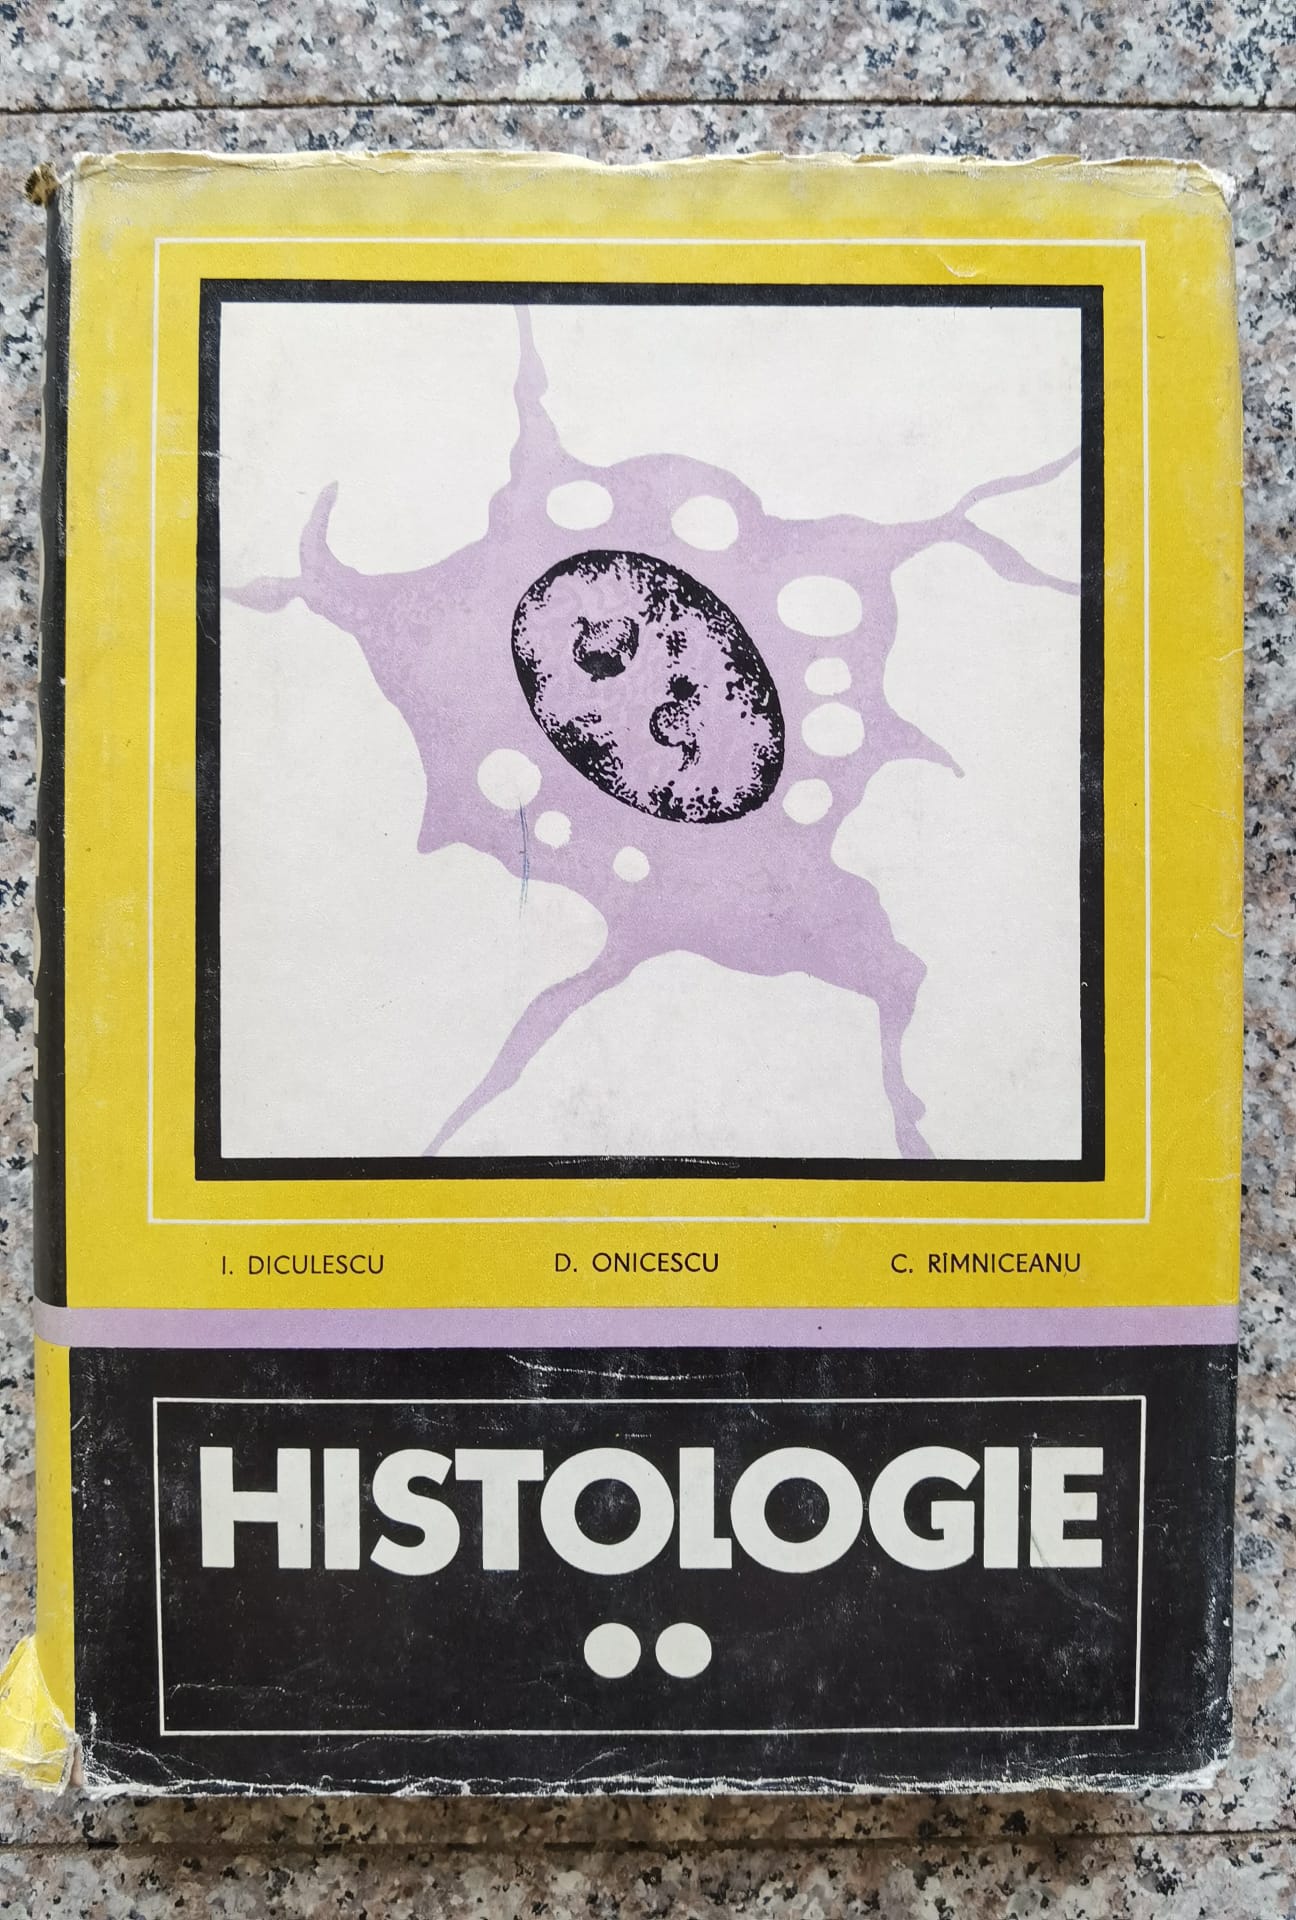 histologie vol. 2                                                                                    i. diculescu, d. onicescu, c. ramniceanu                                                            